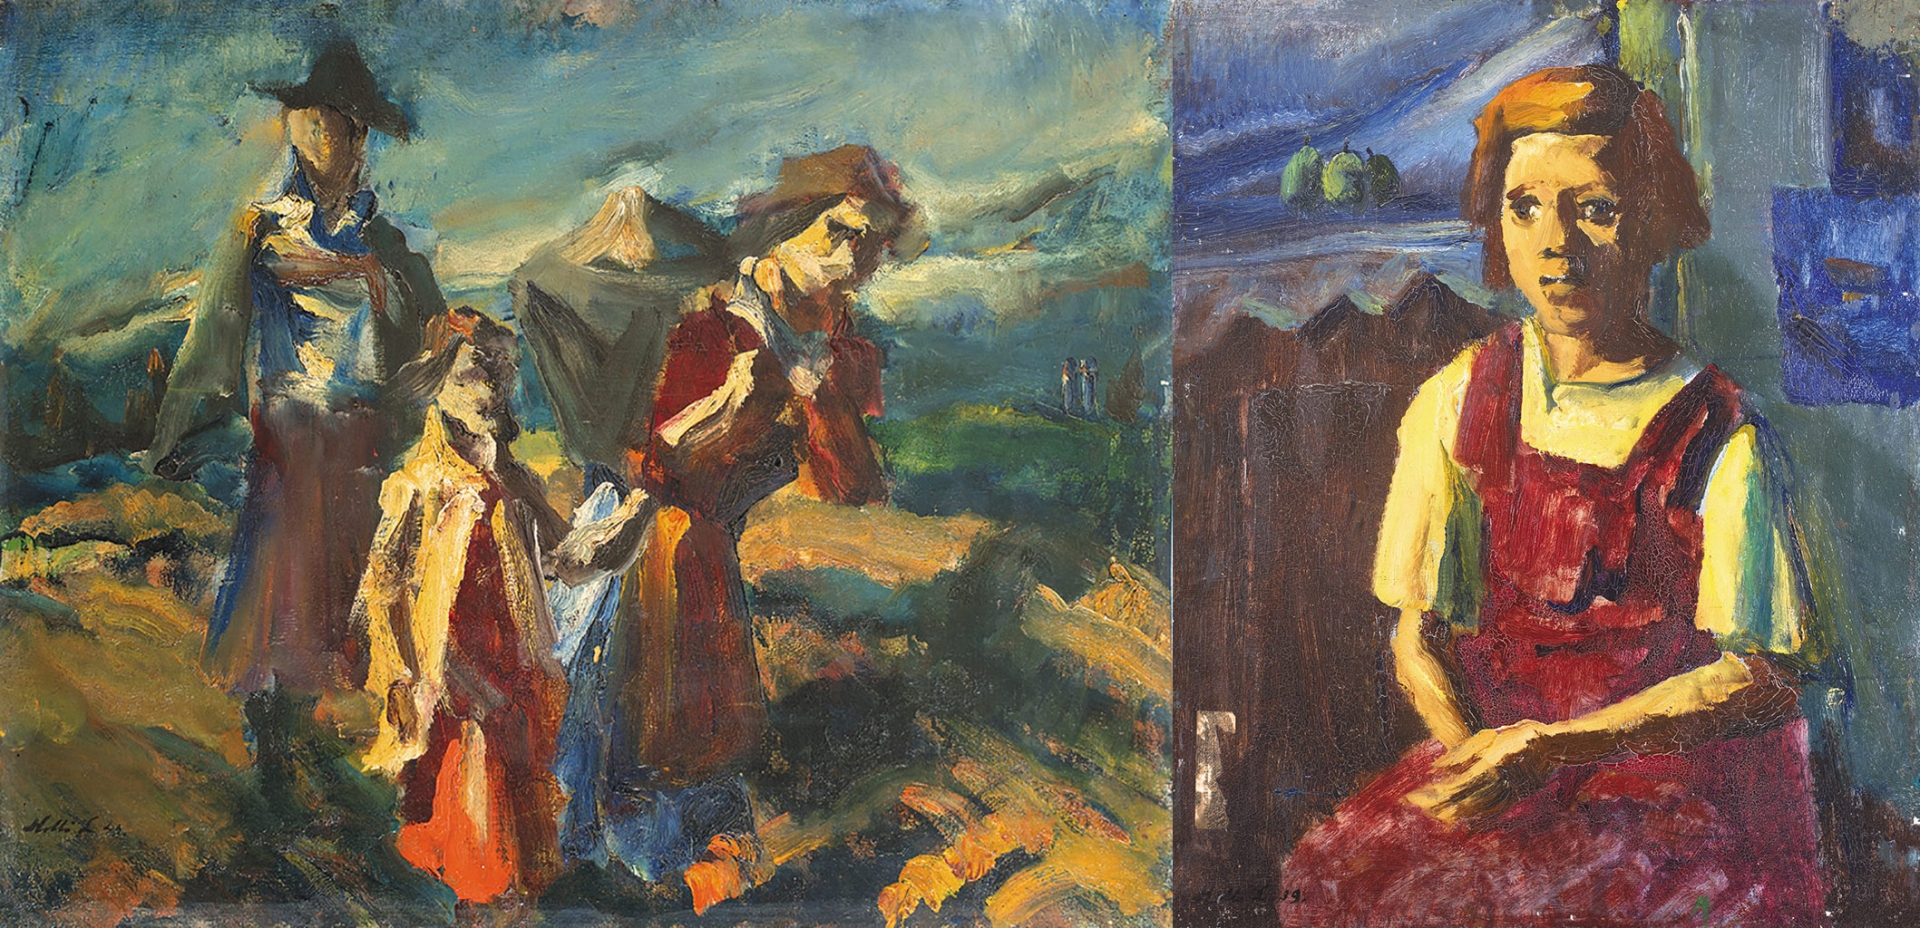 Holló László (1887-1976) Homewards, 1939; On the reverse: Little girl